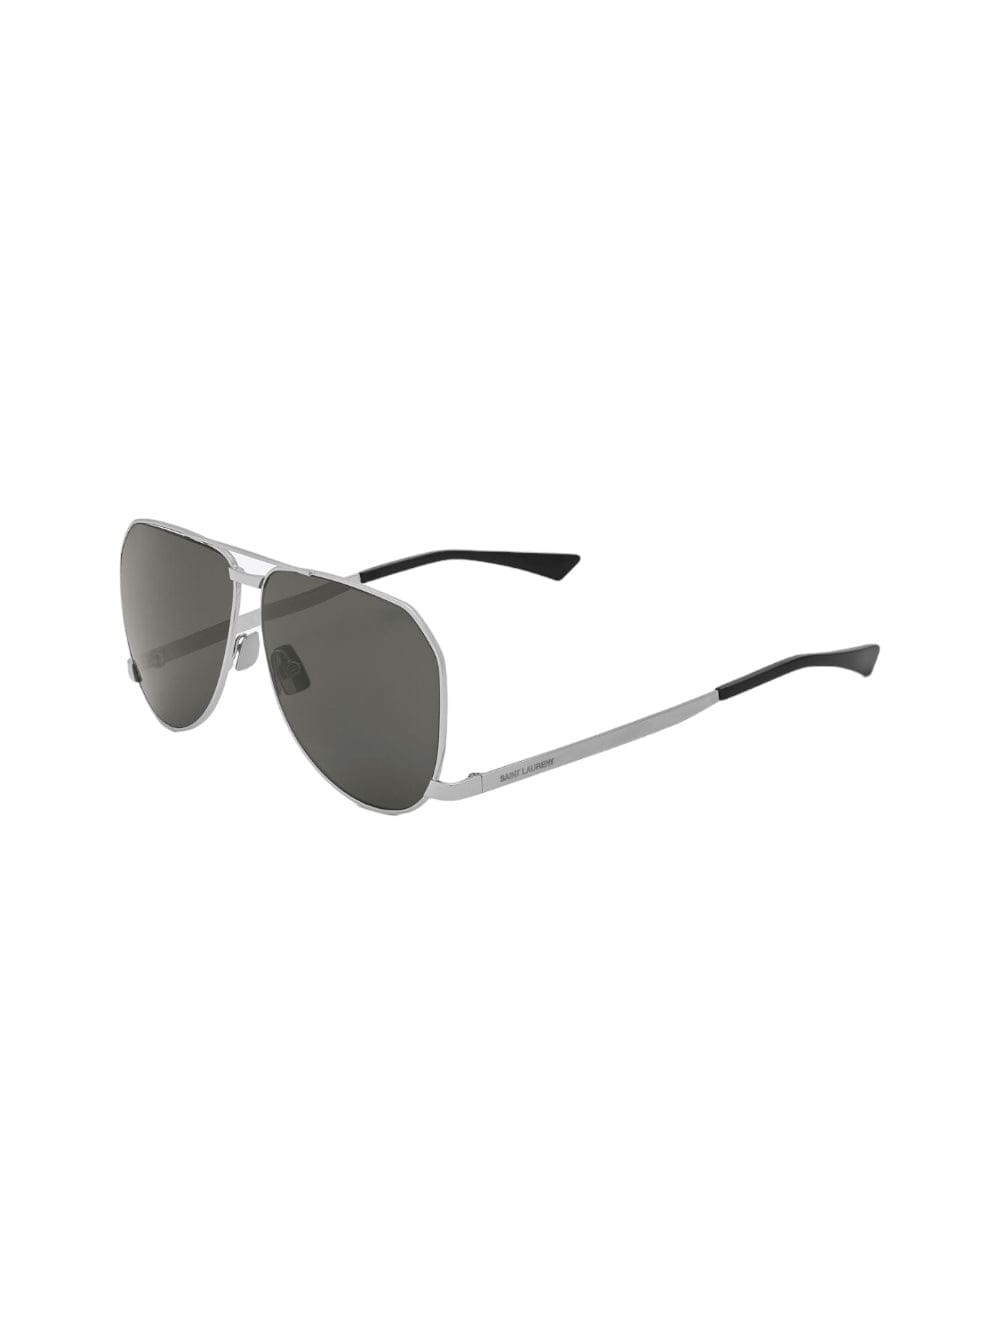 Sl 690 - Dust - Silver Sunglasses